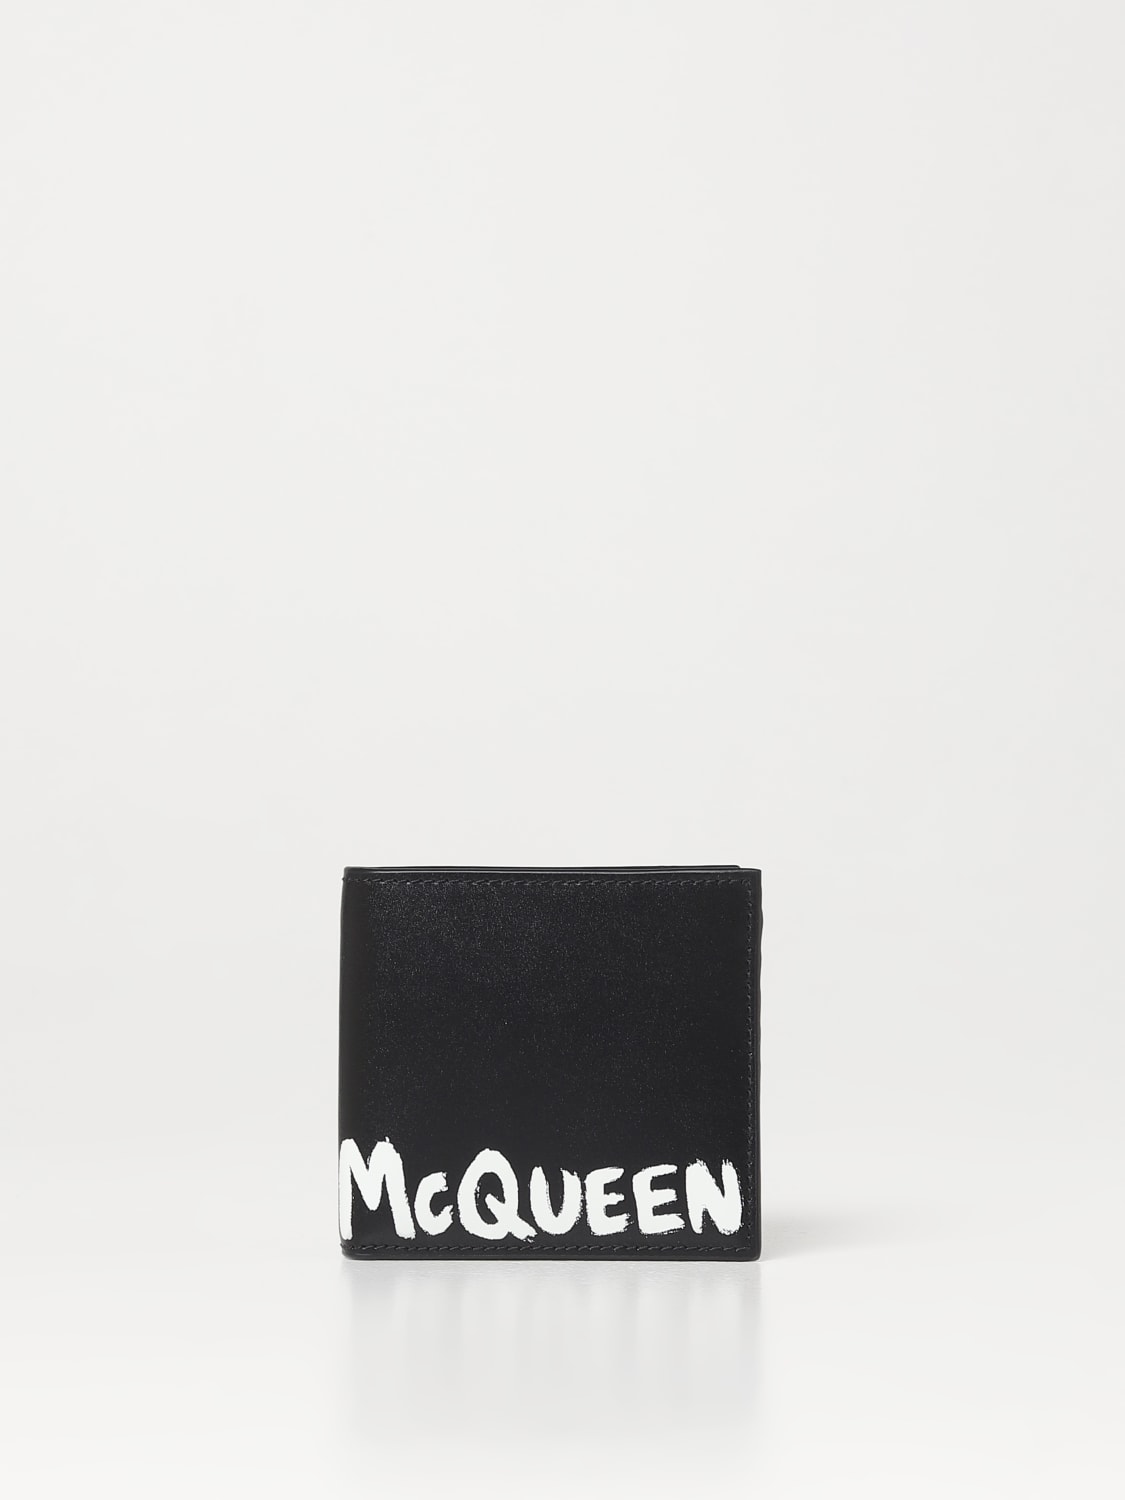 Alexander McQueen Graffiti wallet in leather